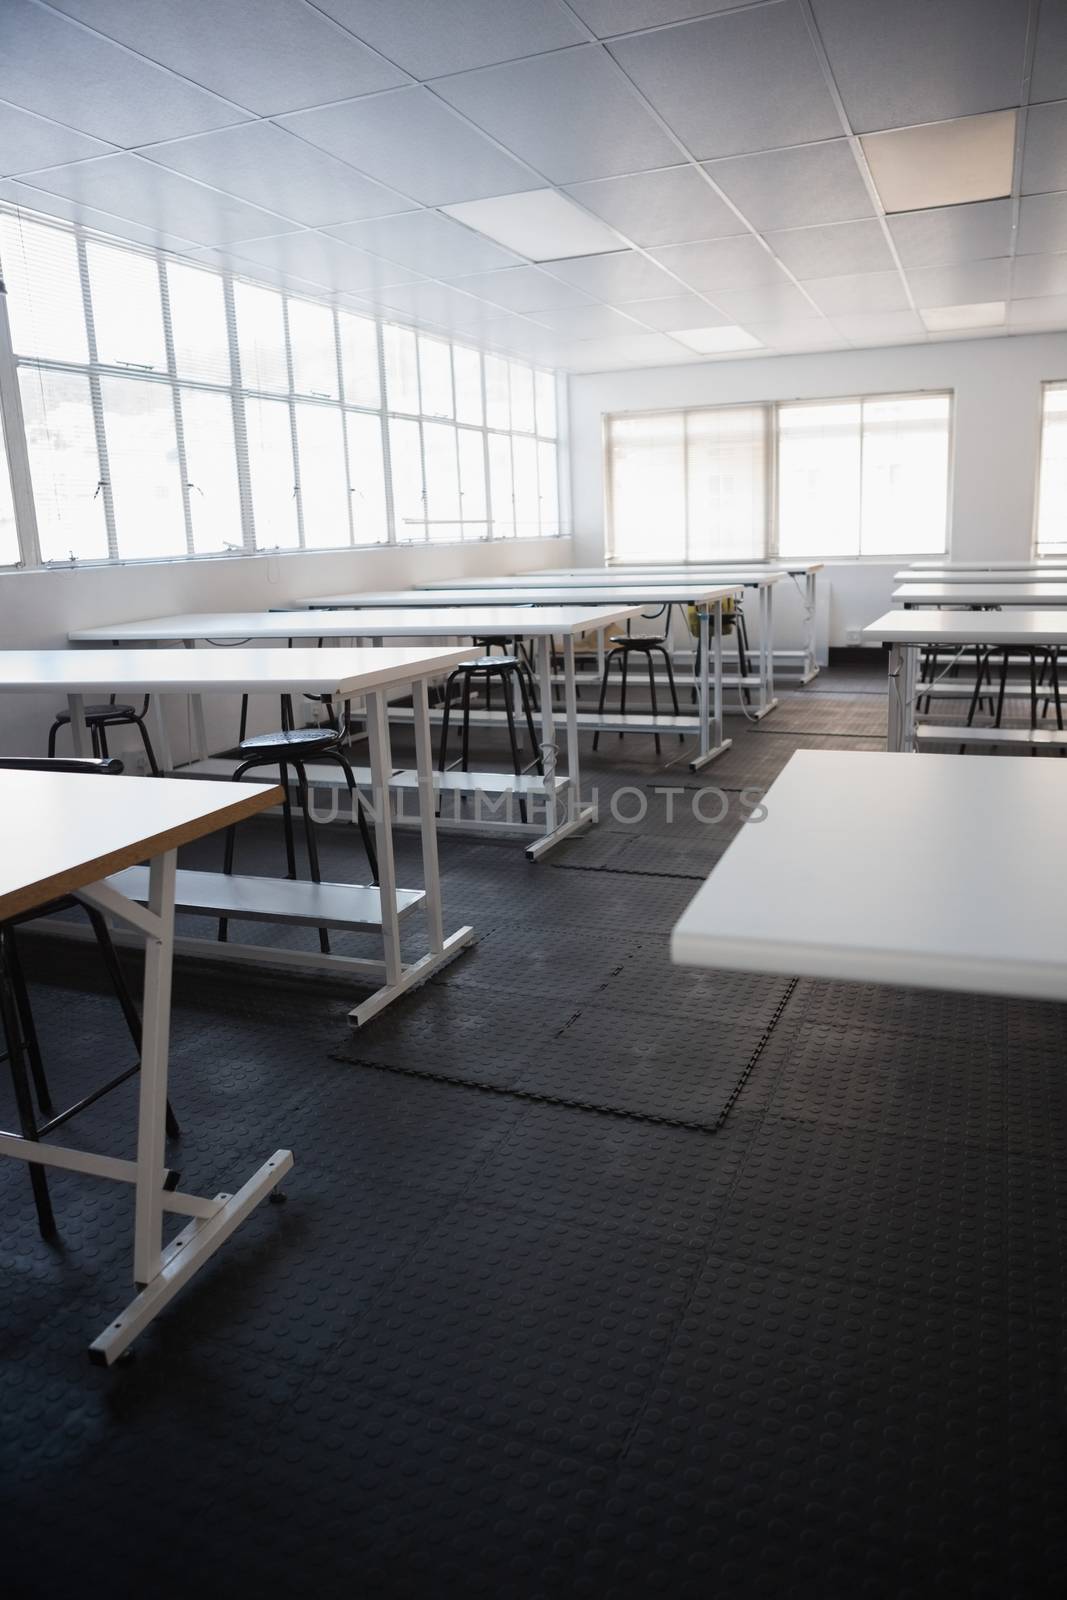 Empty class room  by Wavebreakmedia